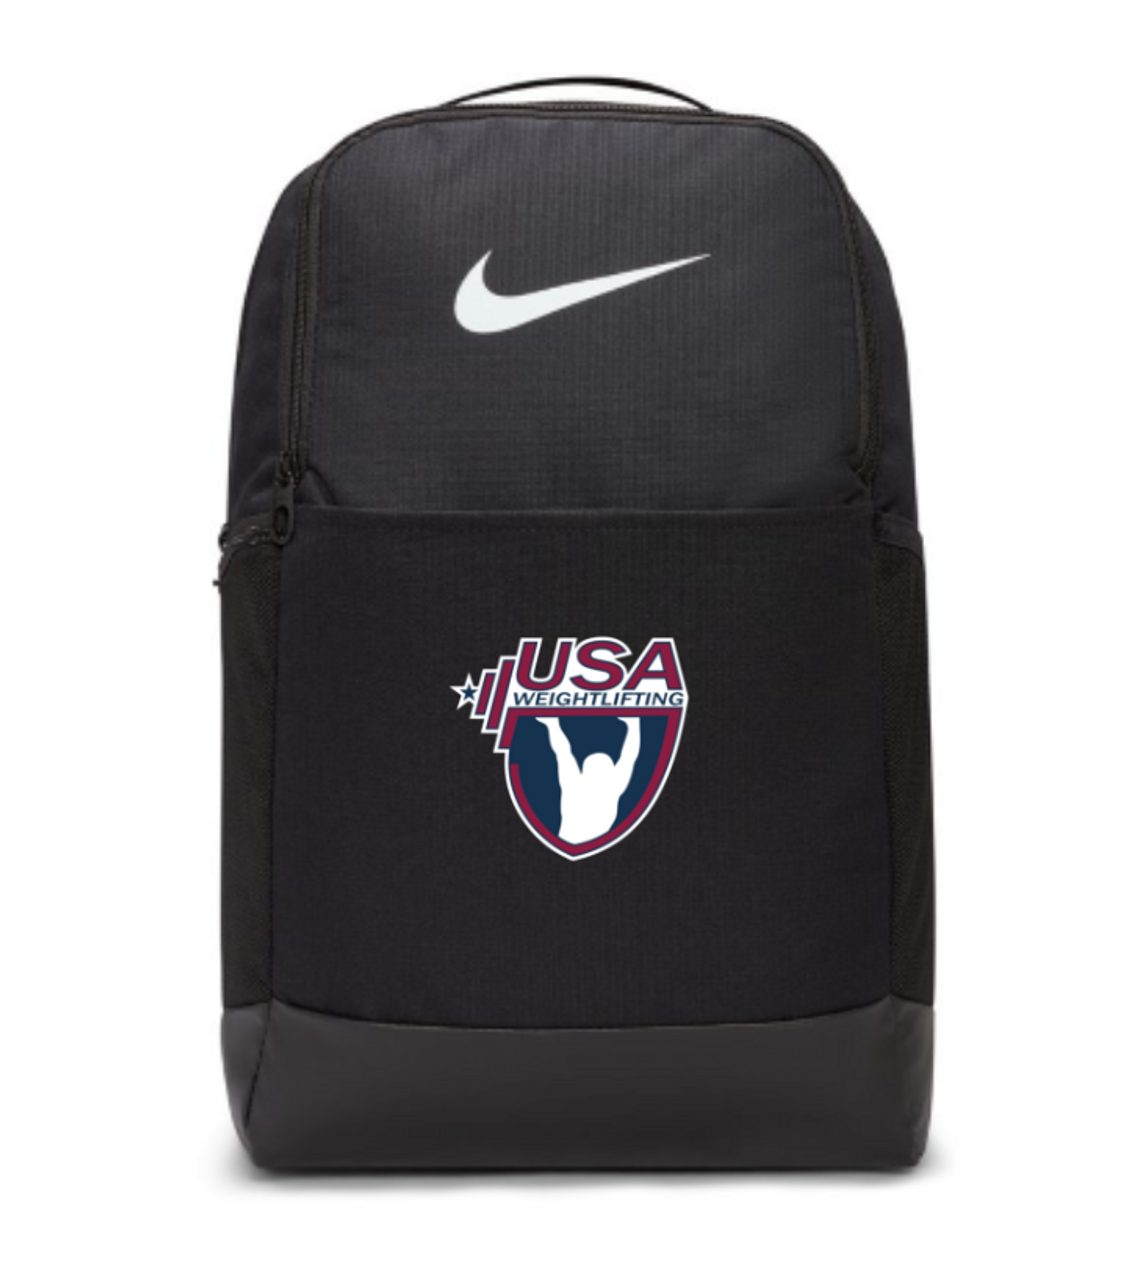 Nike Brasilia Medium Backpack, Product